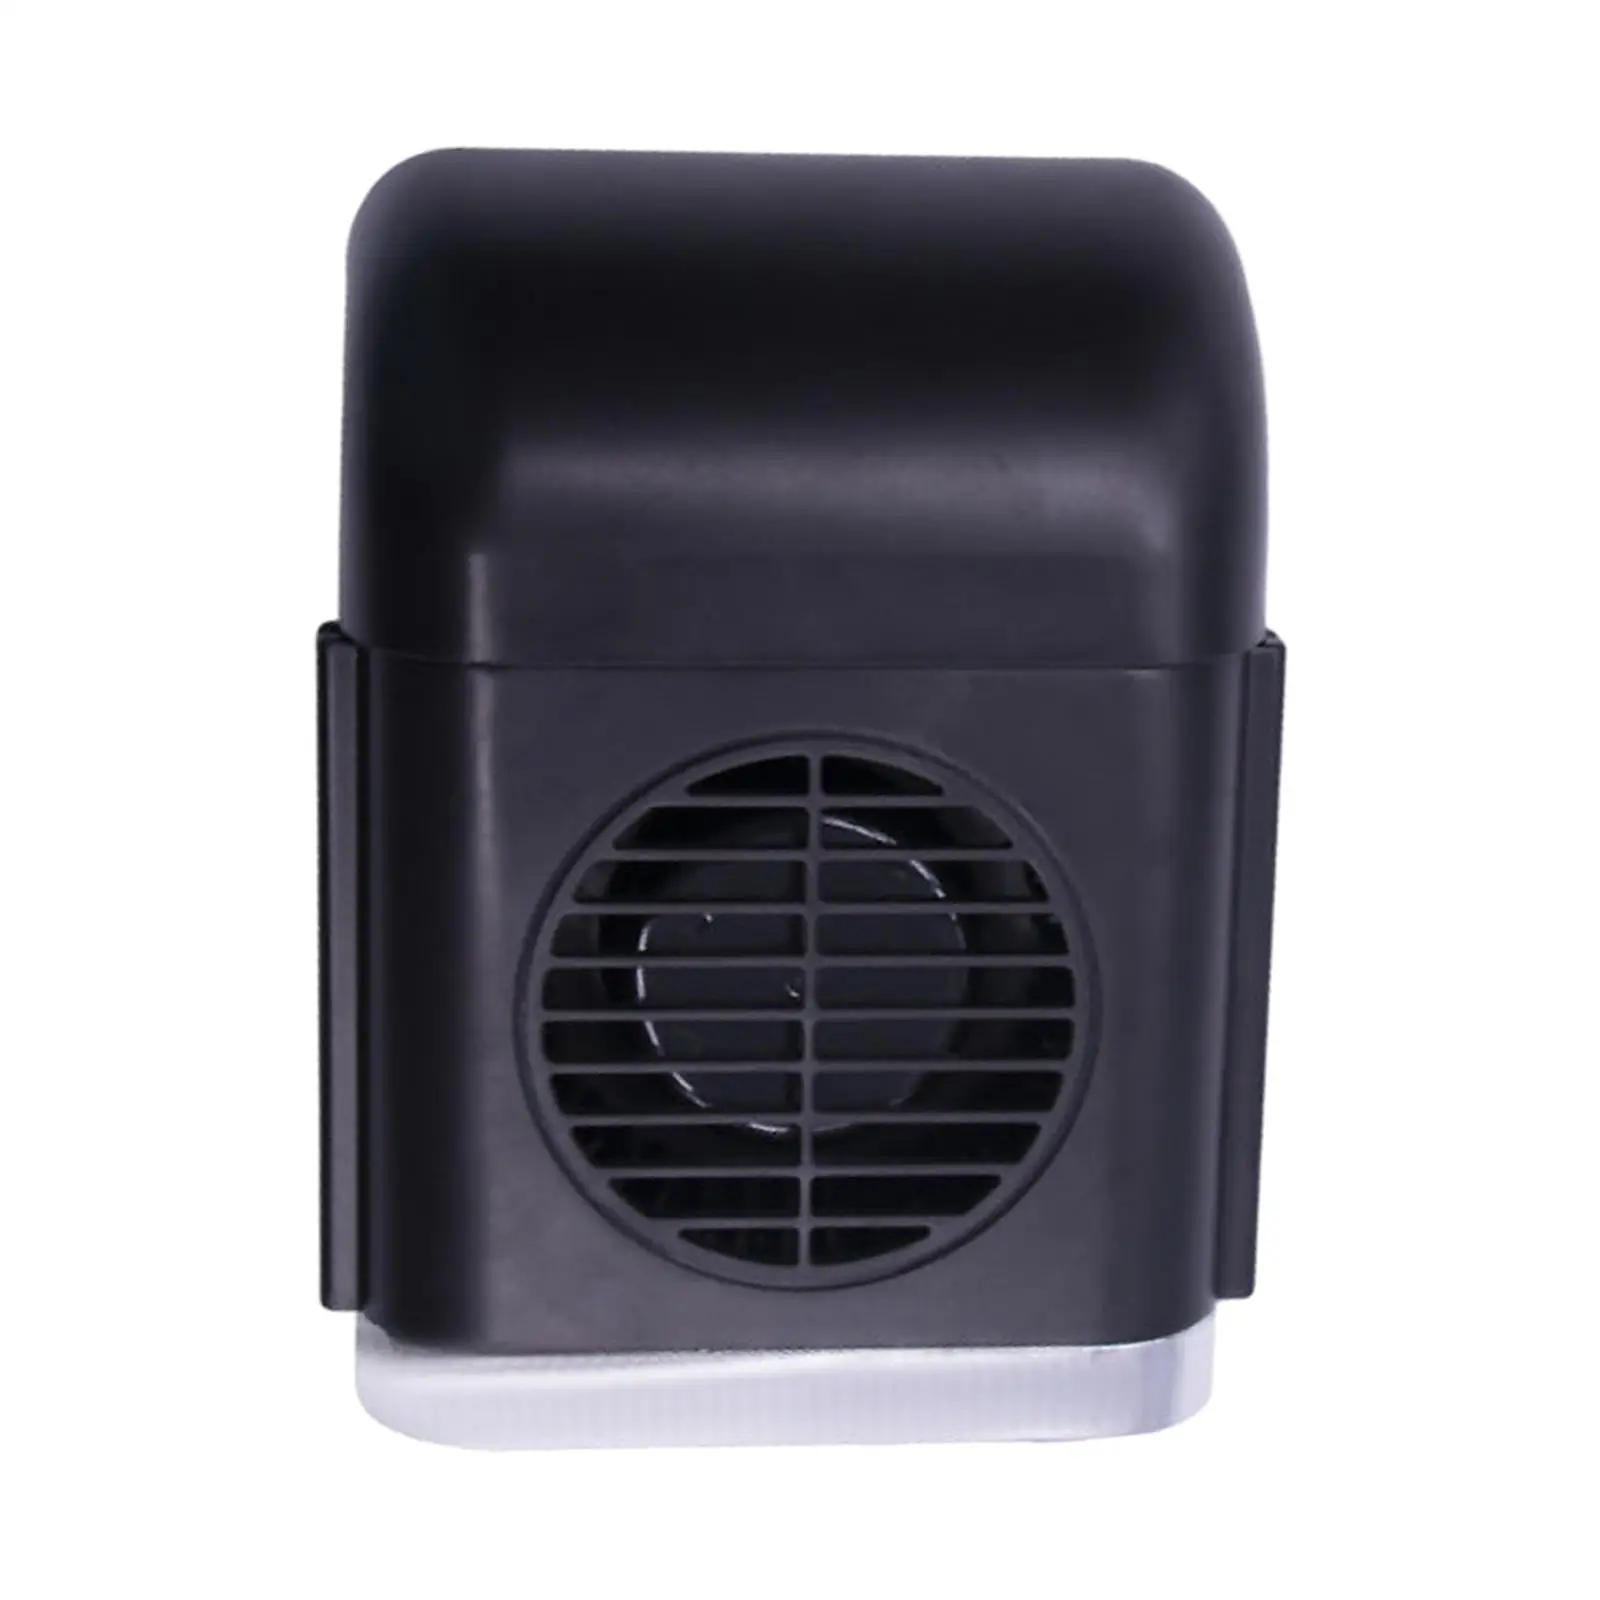 USB Seat Cooling Fan, 5V Seat Back Fan, Mini Portable Vehicle Seat Fan Electric Car Fan for Truck Sedan SUV